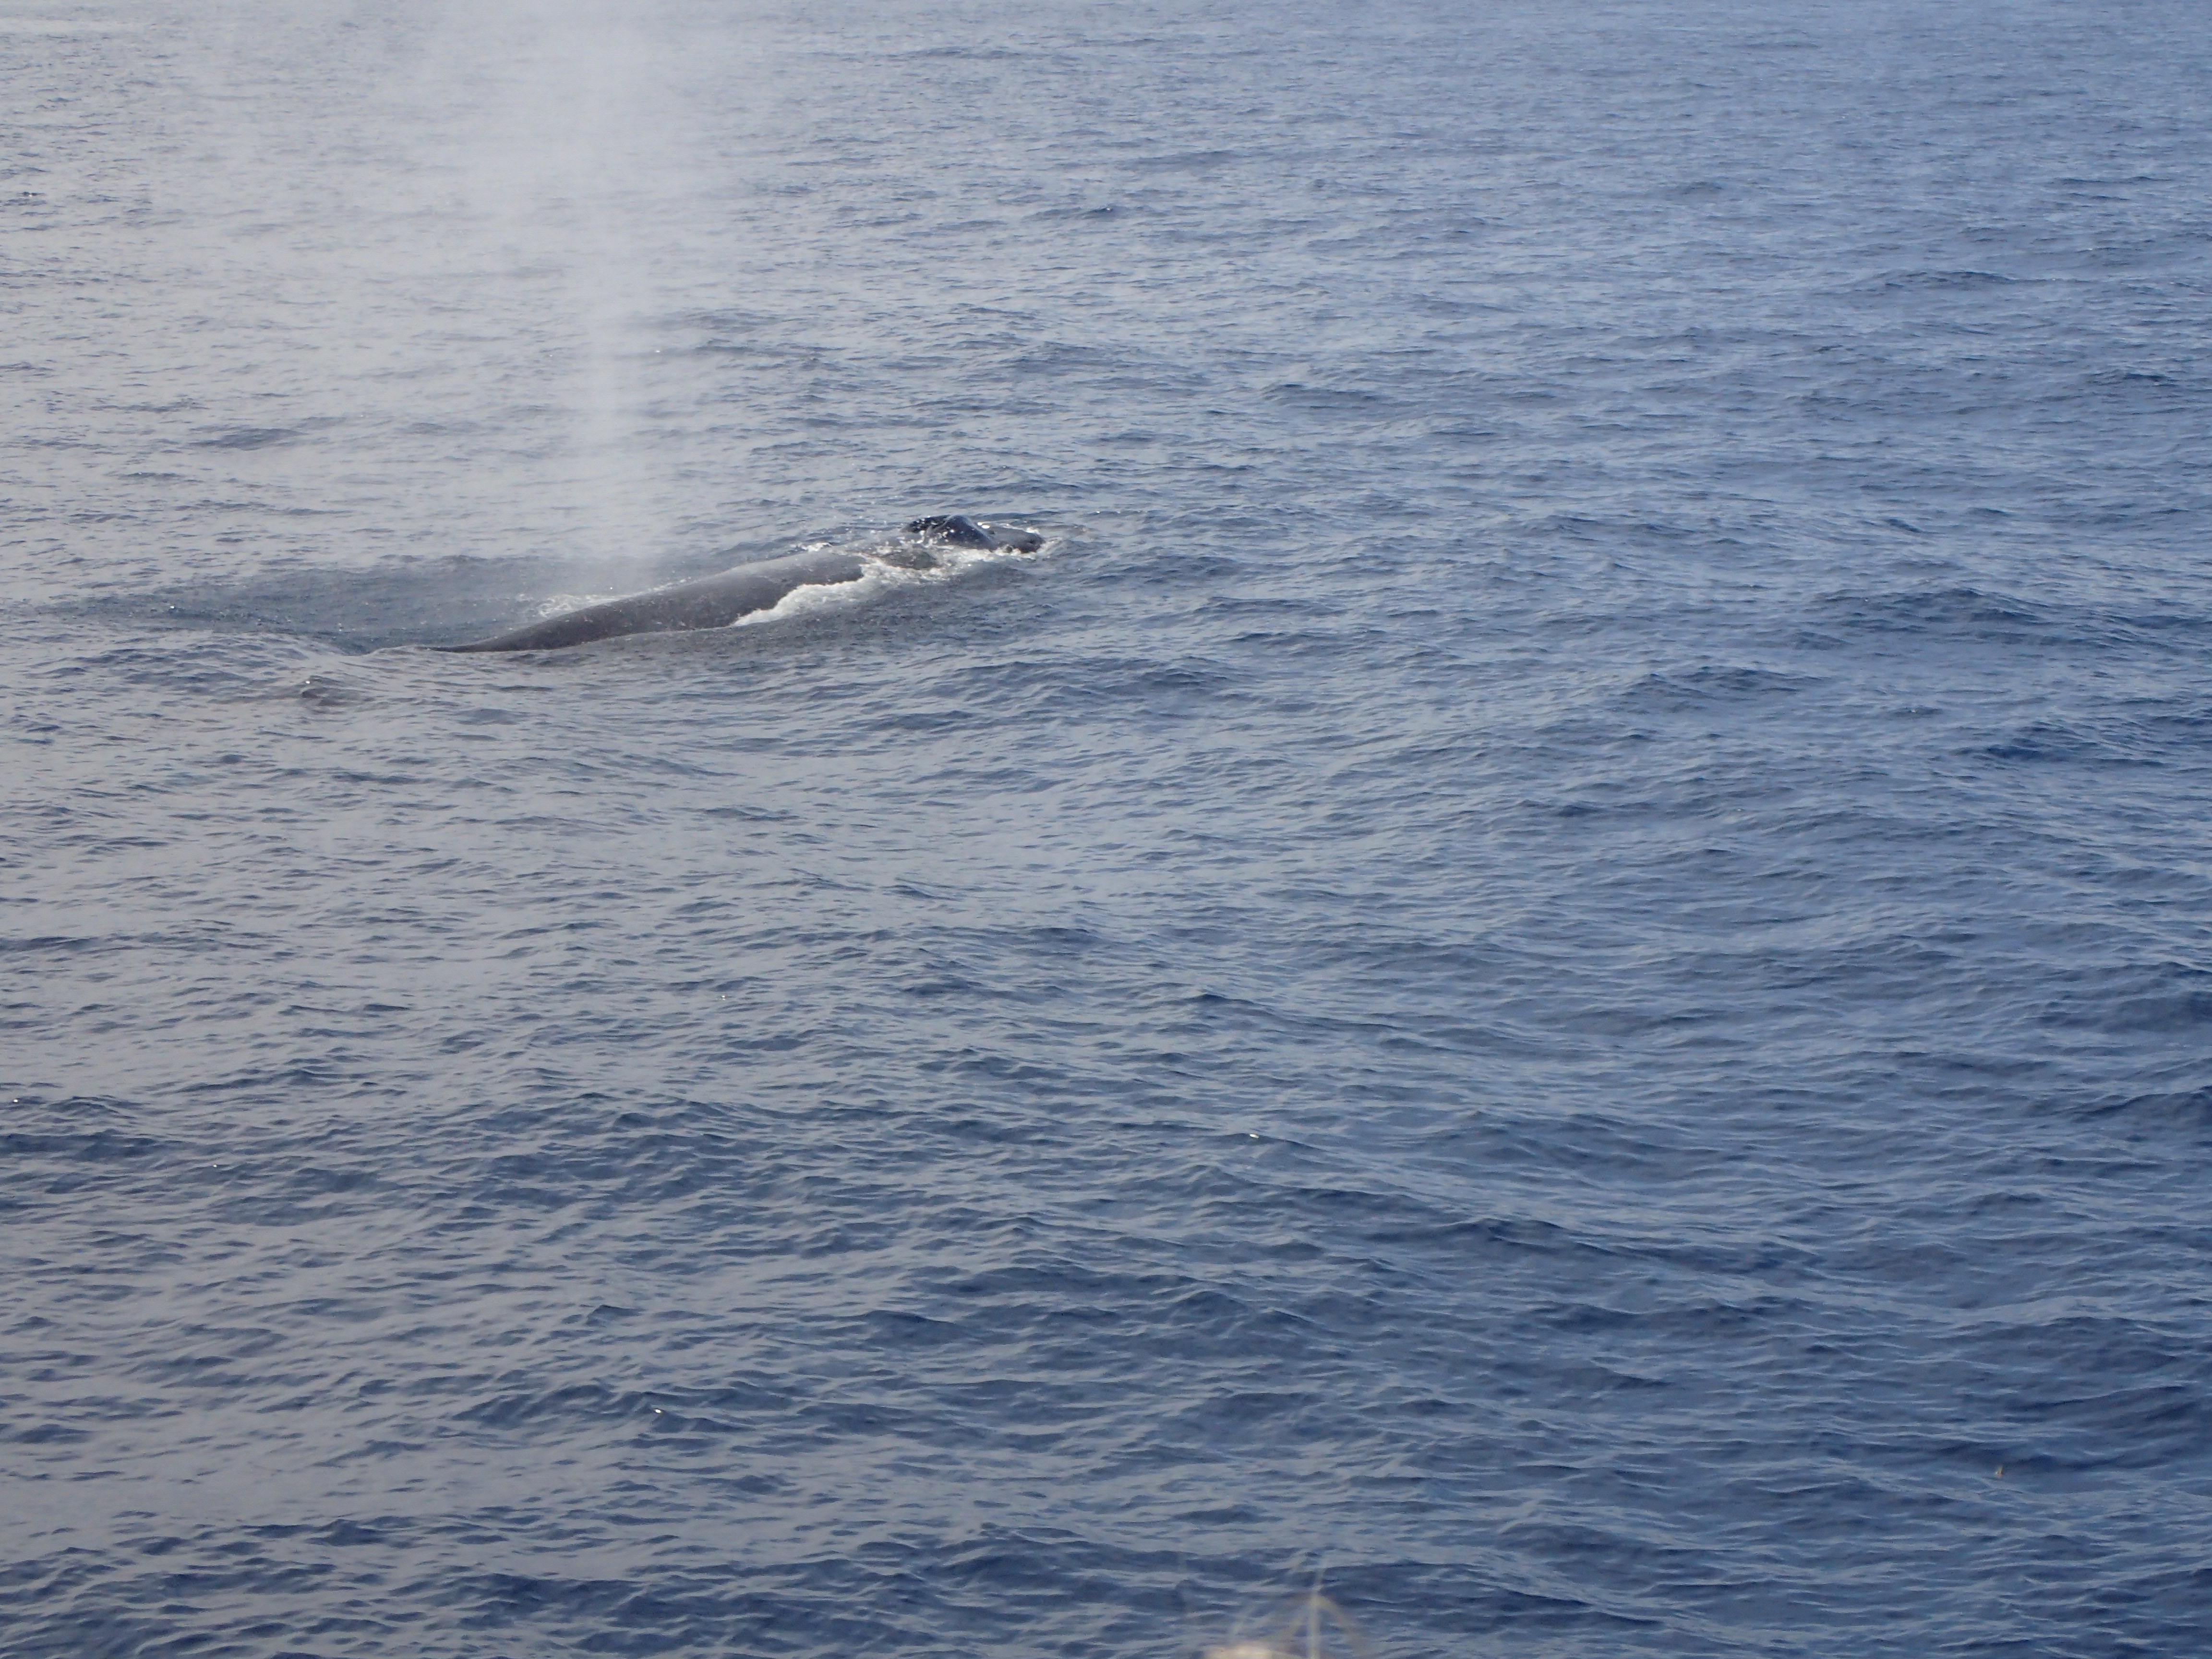 A humpback whale spouting